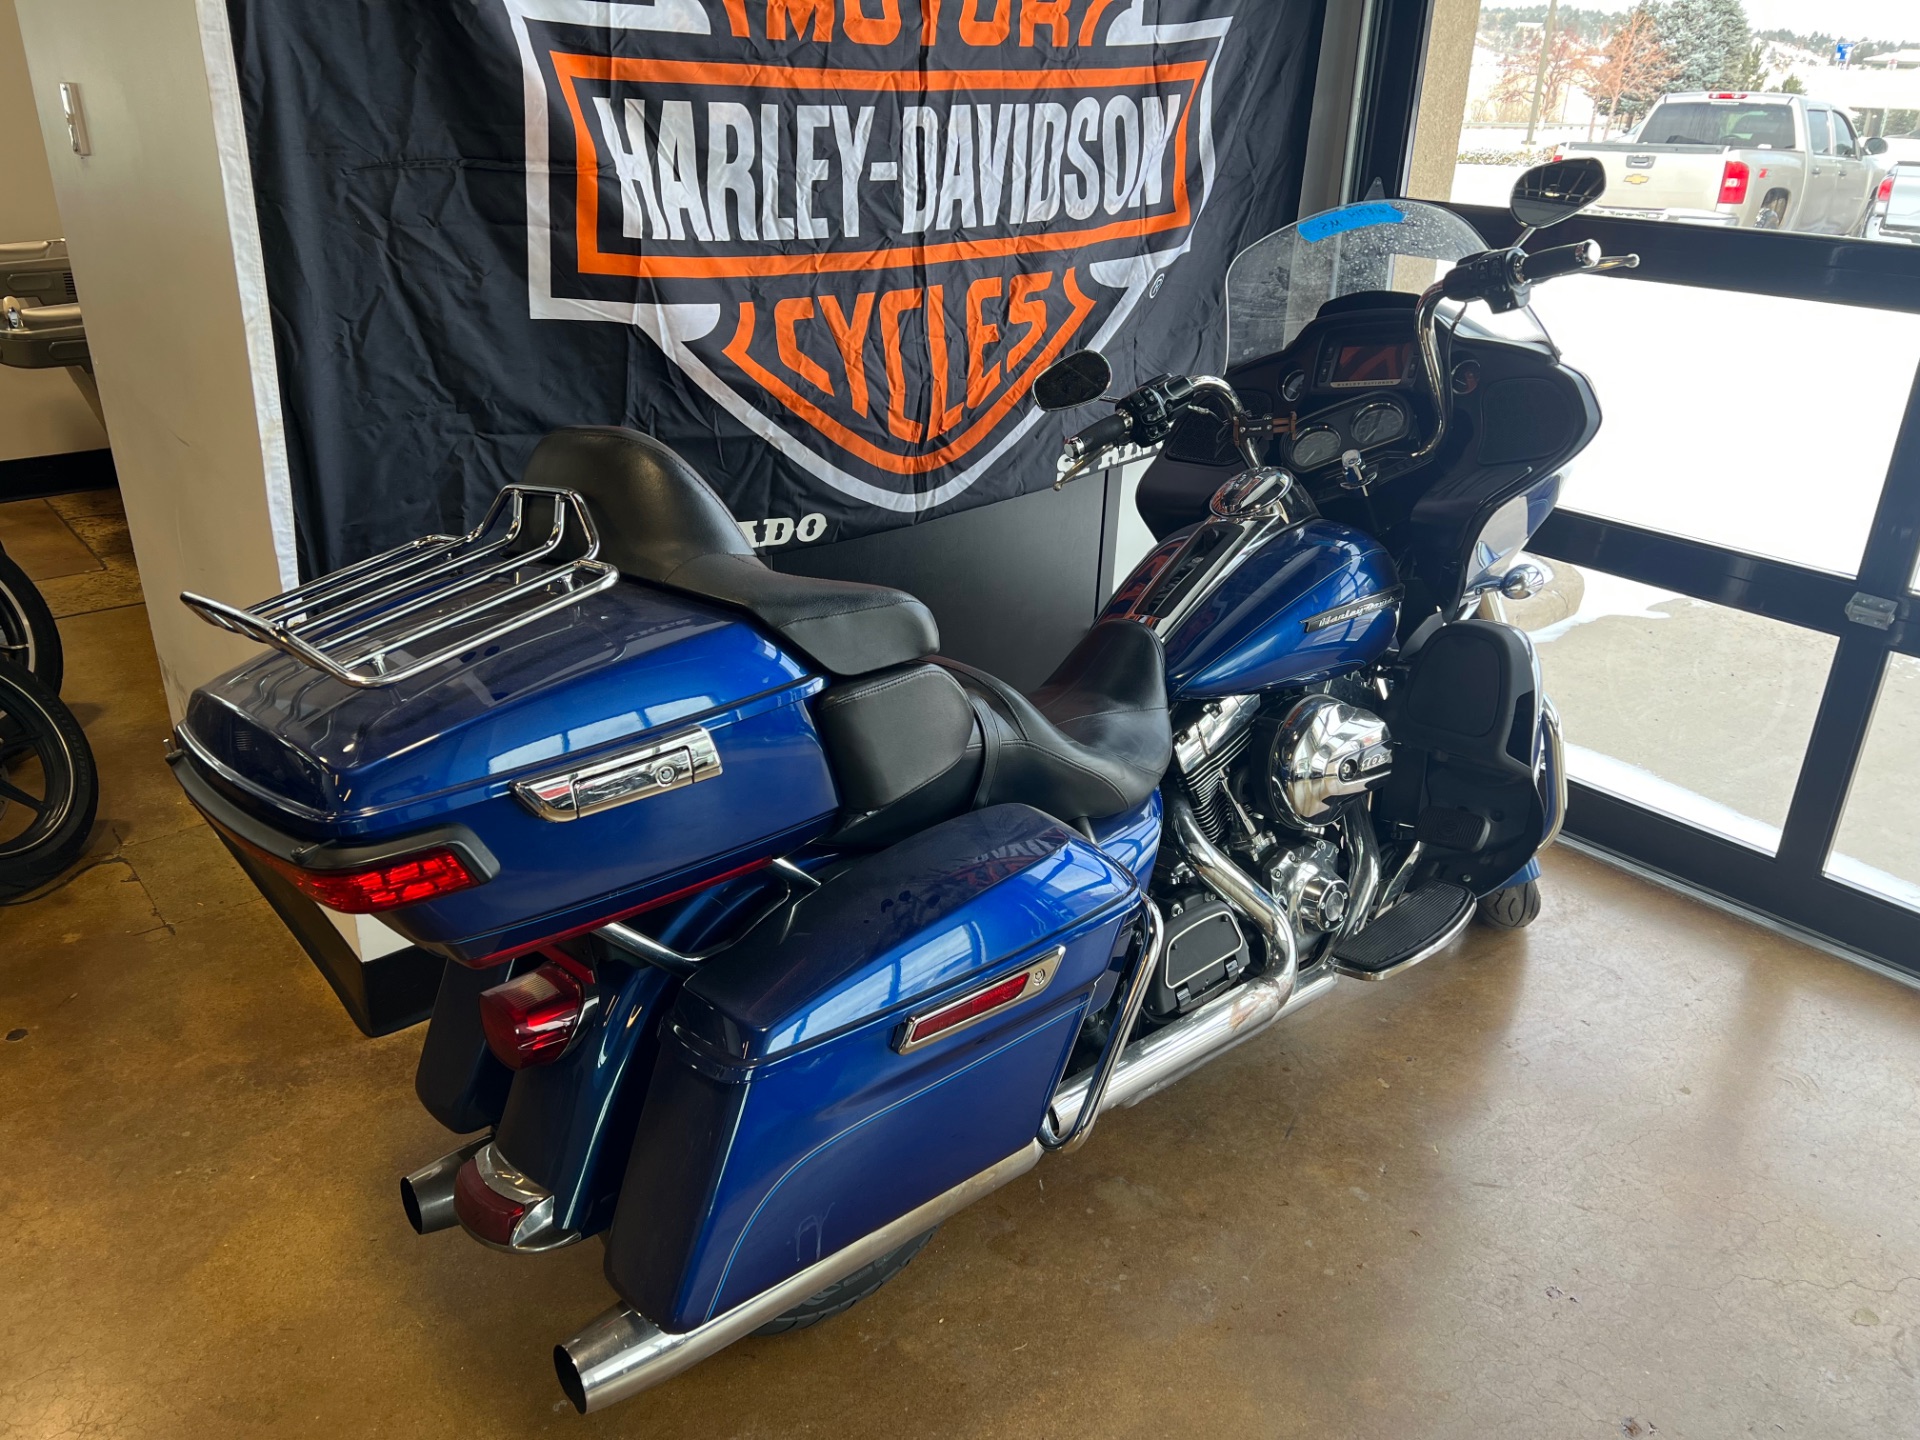 2016 Harley-Davidson Road Glide® Ultra in Colorado Springs, Colorado - Photo 8